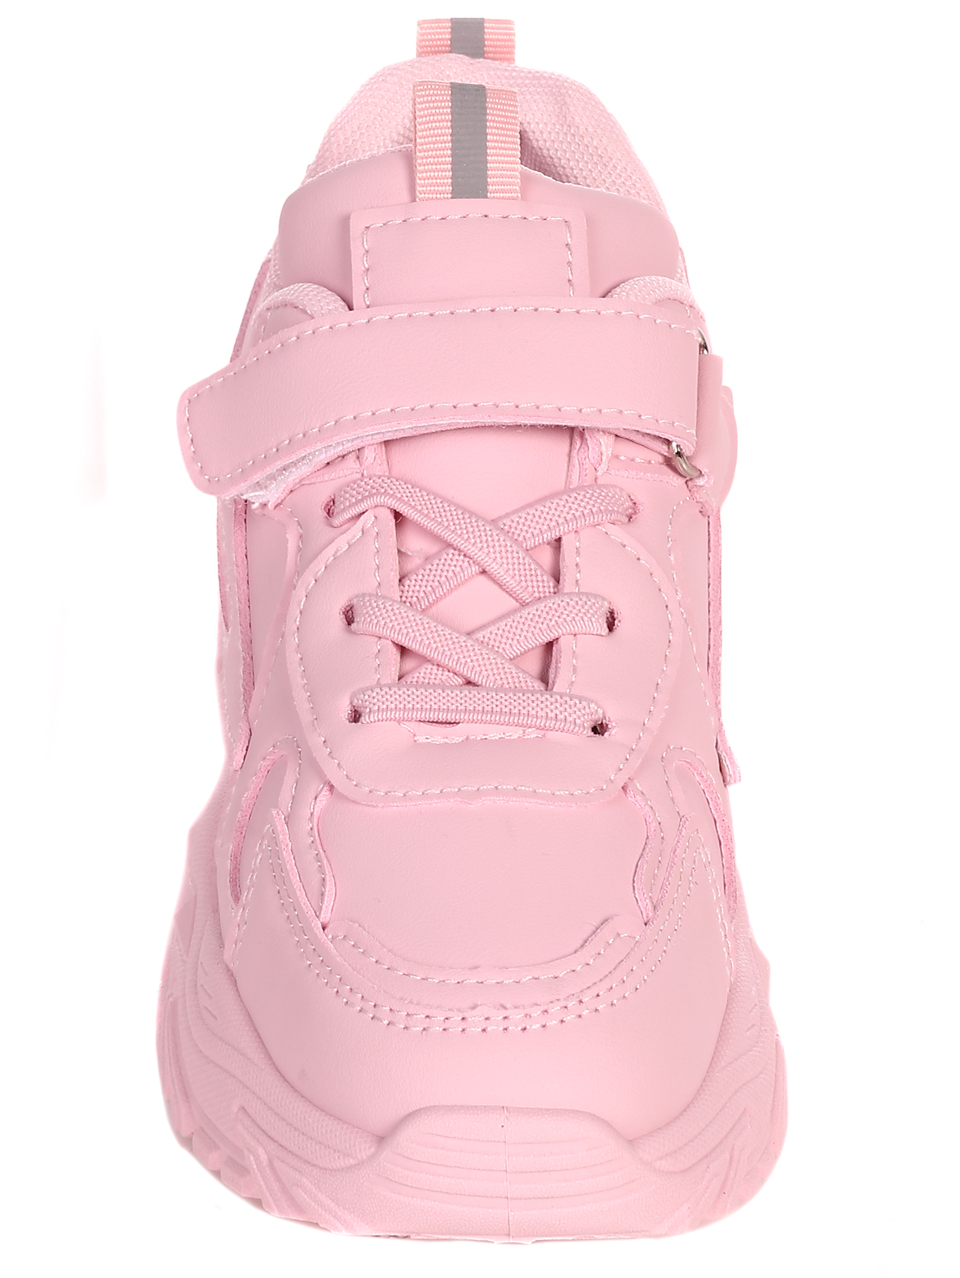 Ежедневни детски обувки в розово 18U-22600 pink